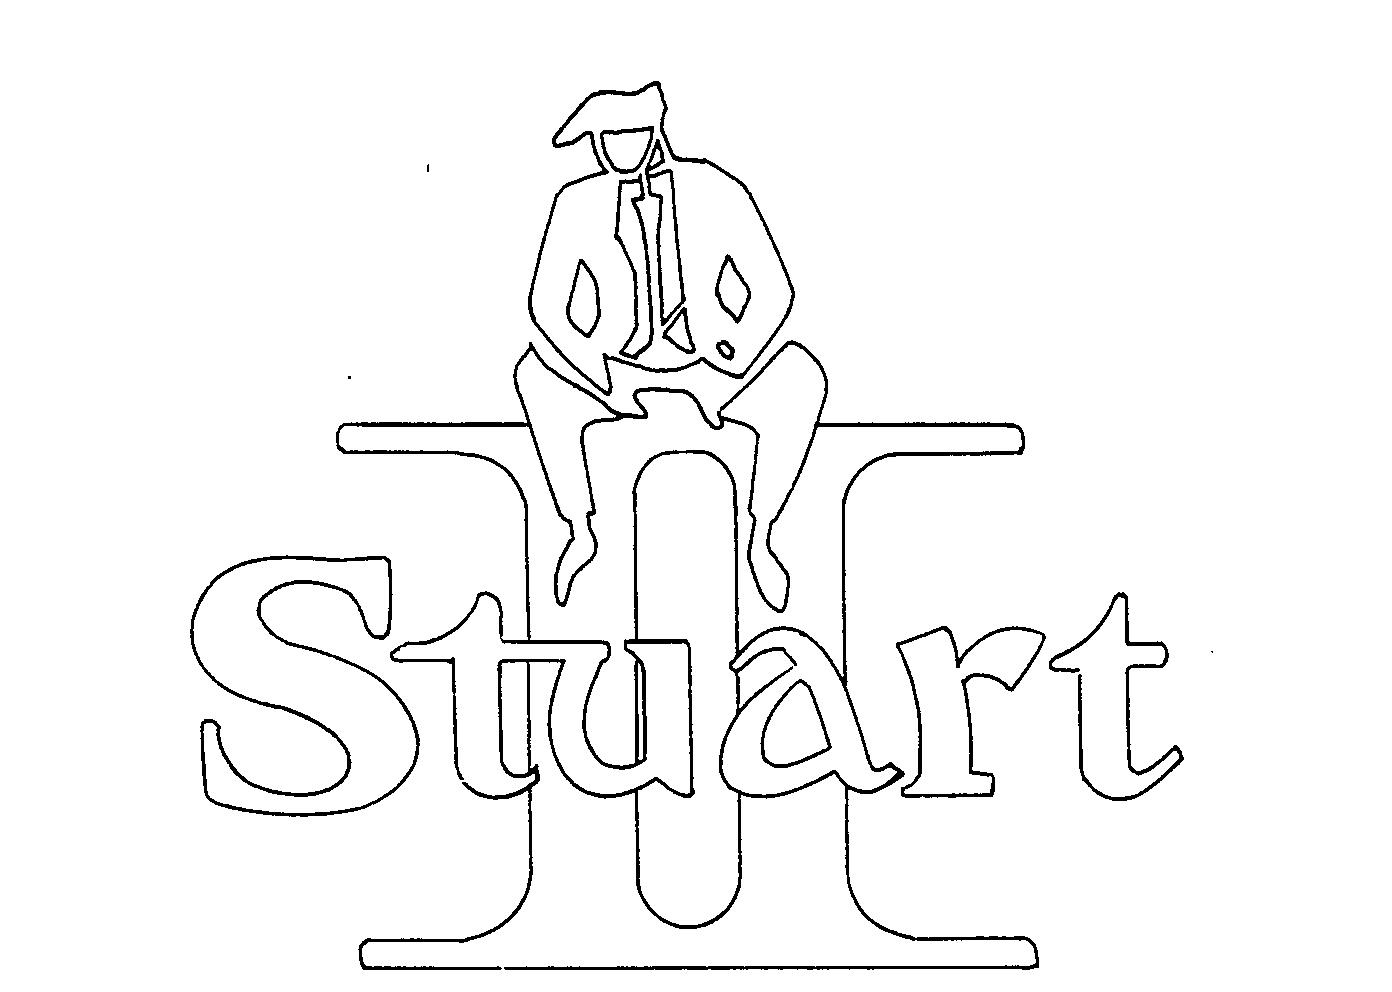  STUART II